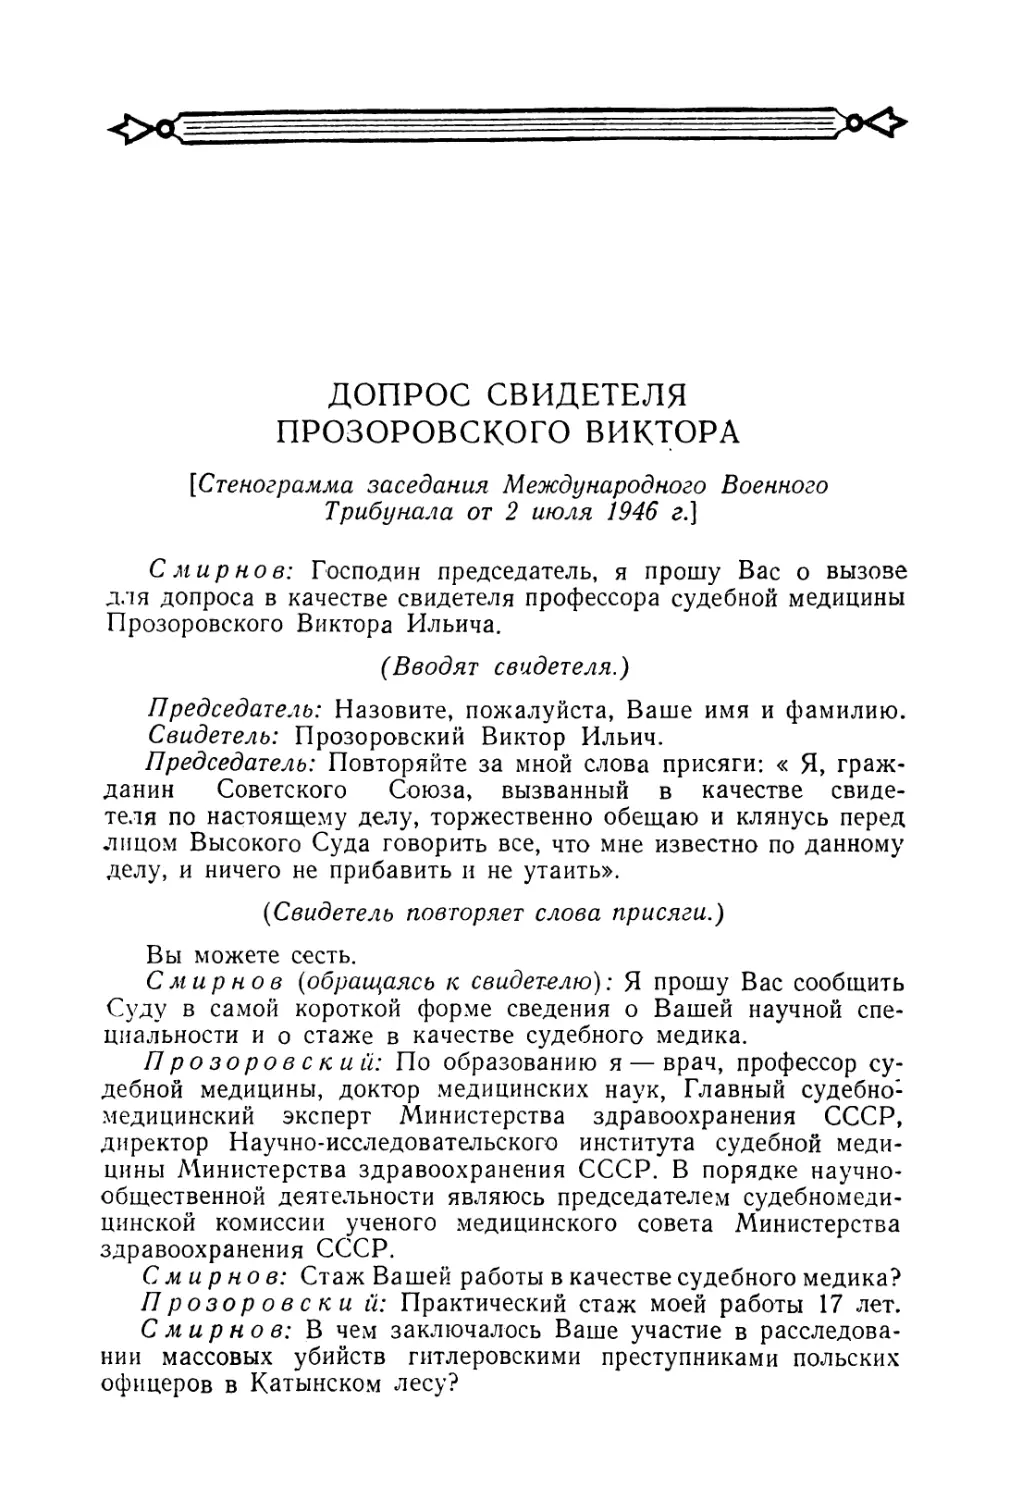 Допрос свидетеля Прозоровского Виктора в заседании Трибунала 2 июля 1946 г.